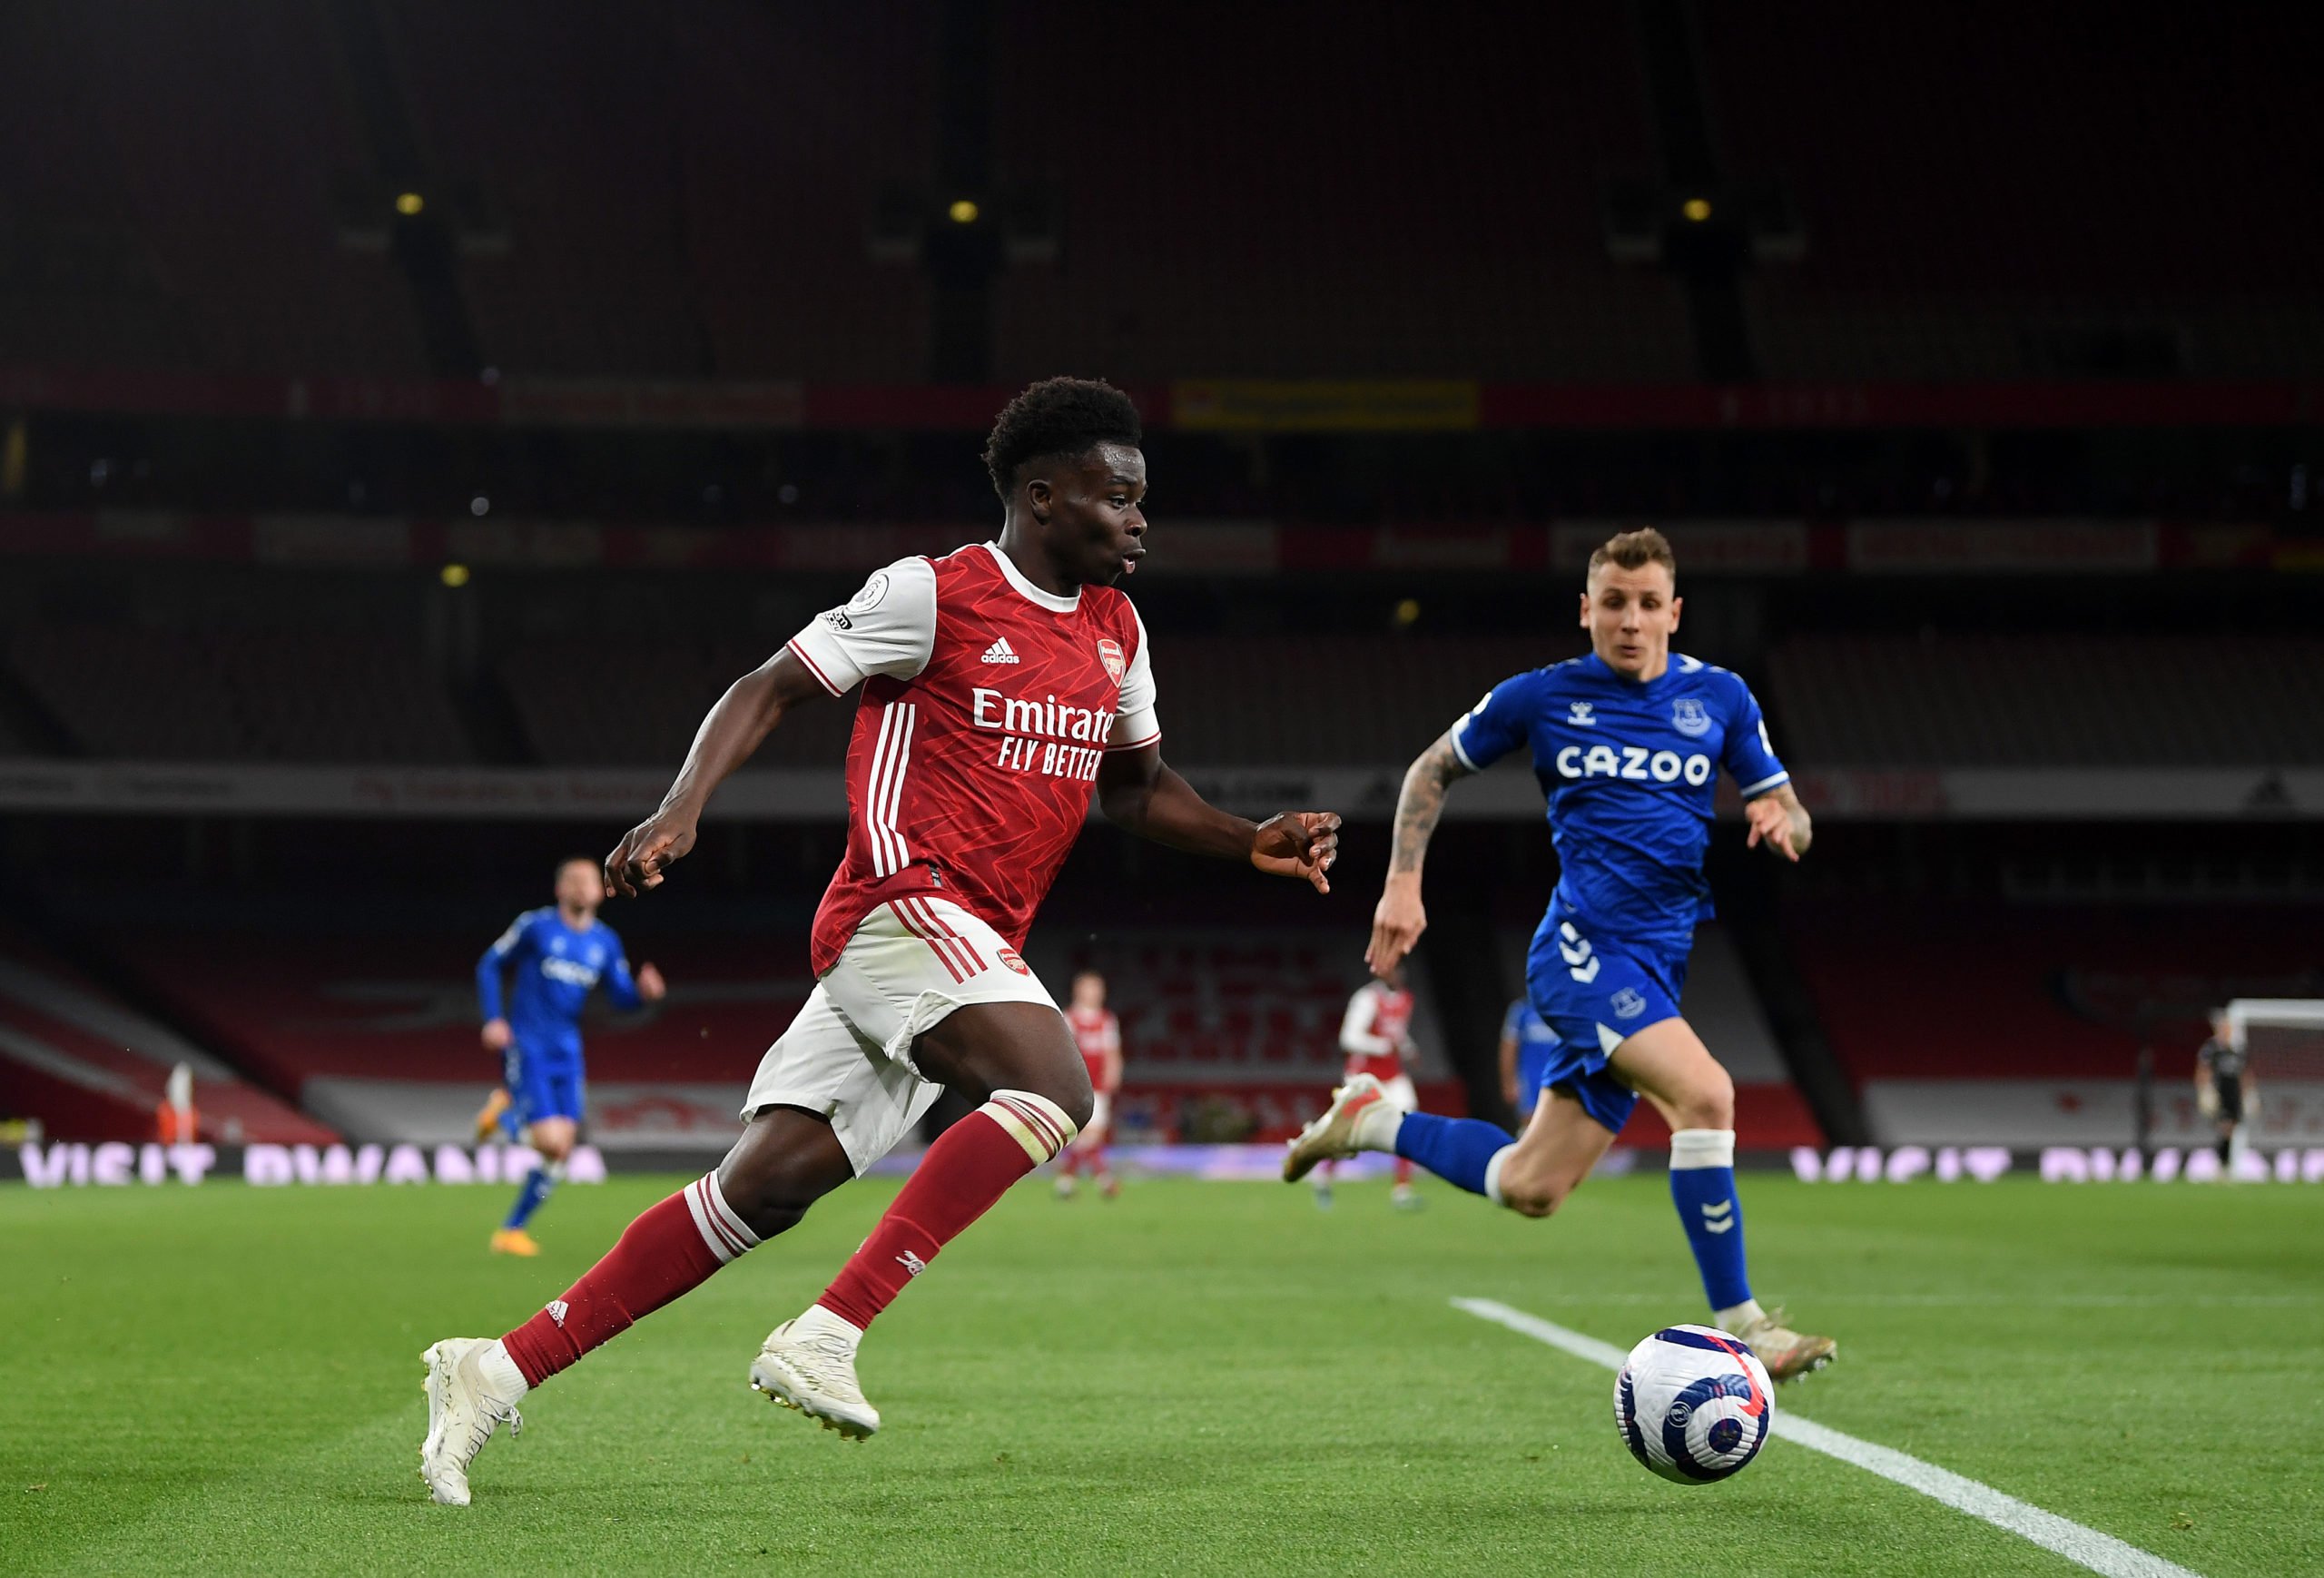 Arsenal star Bukayo Saka